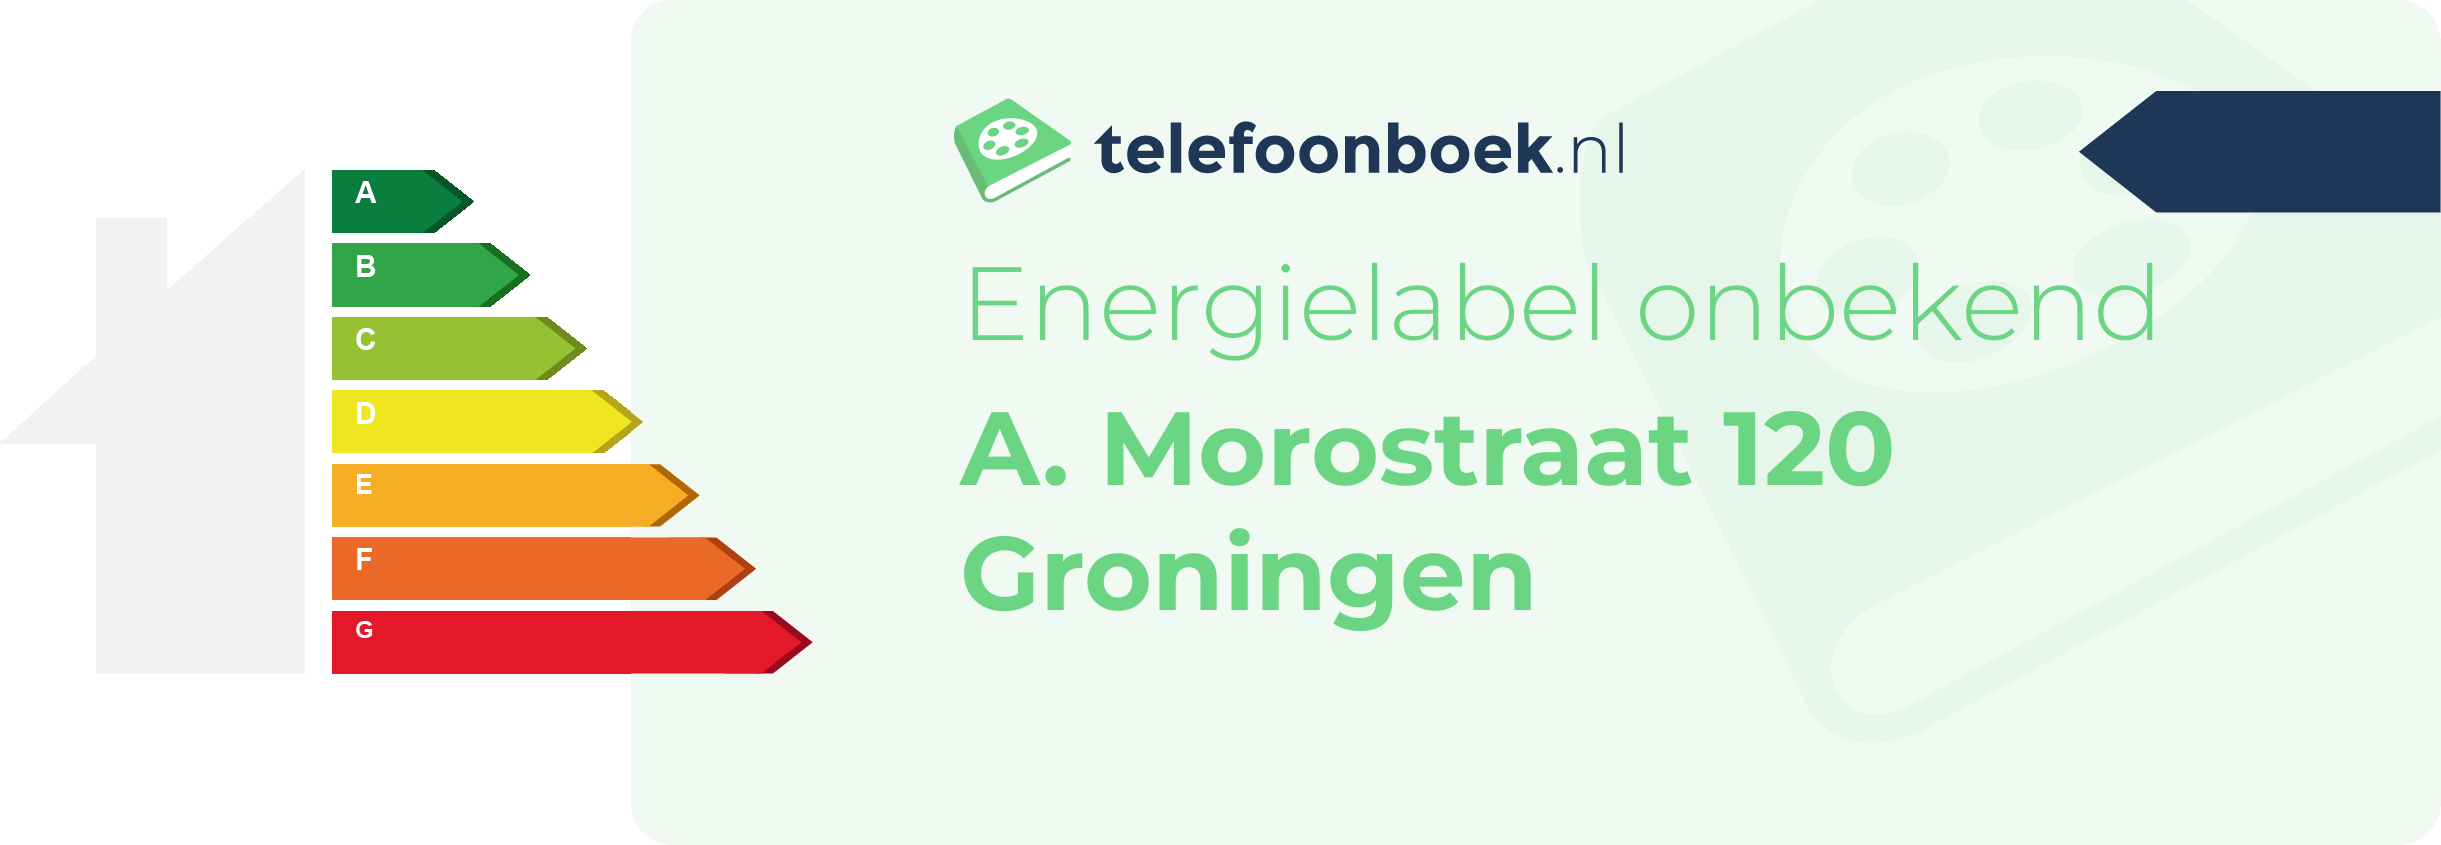 Energielabel A. Morostraat 120 Groningen